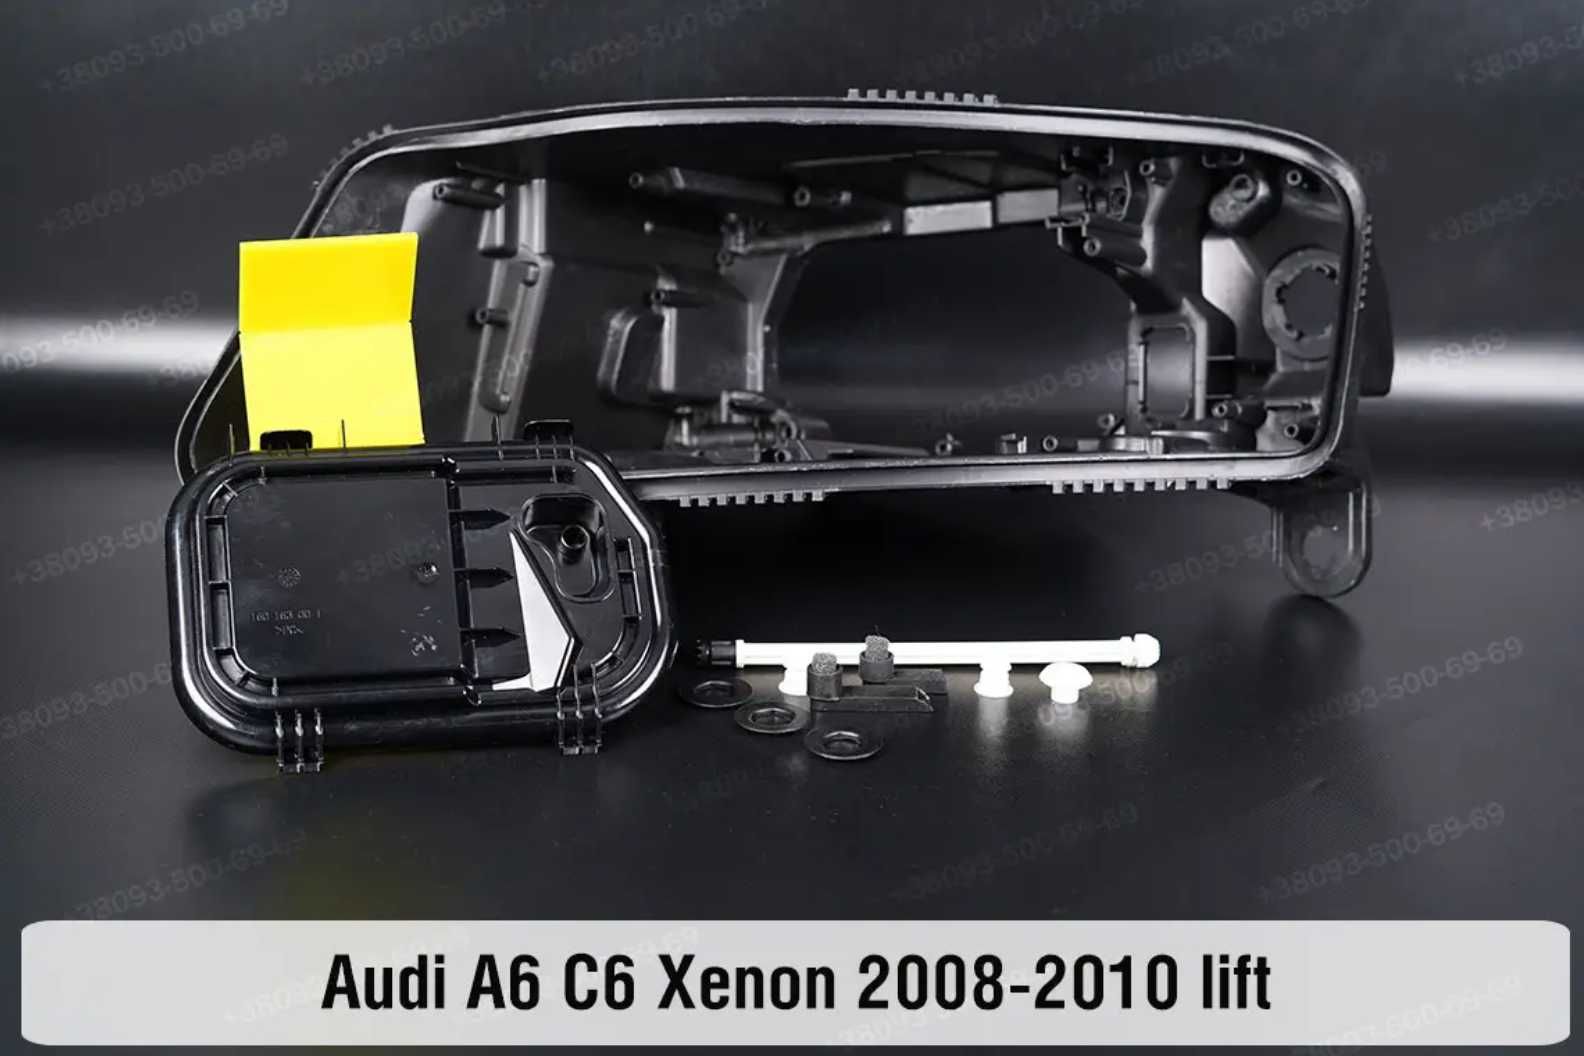 Скло корпус фары Audi a6c5 a6c6 стекла фар Ауди а6с5 а6с6 1997-11 ушки